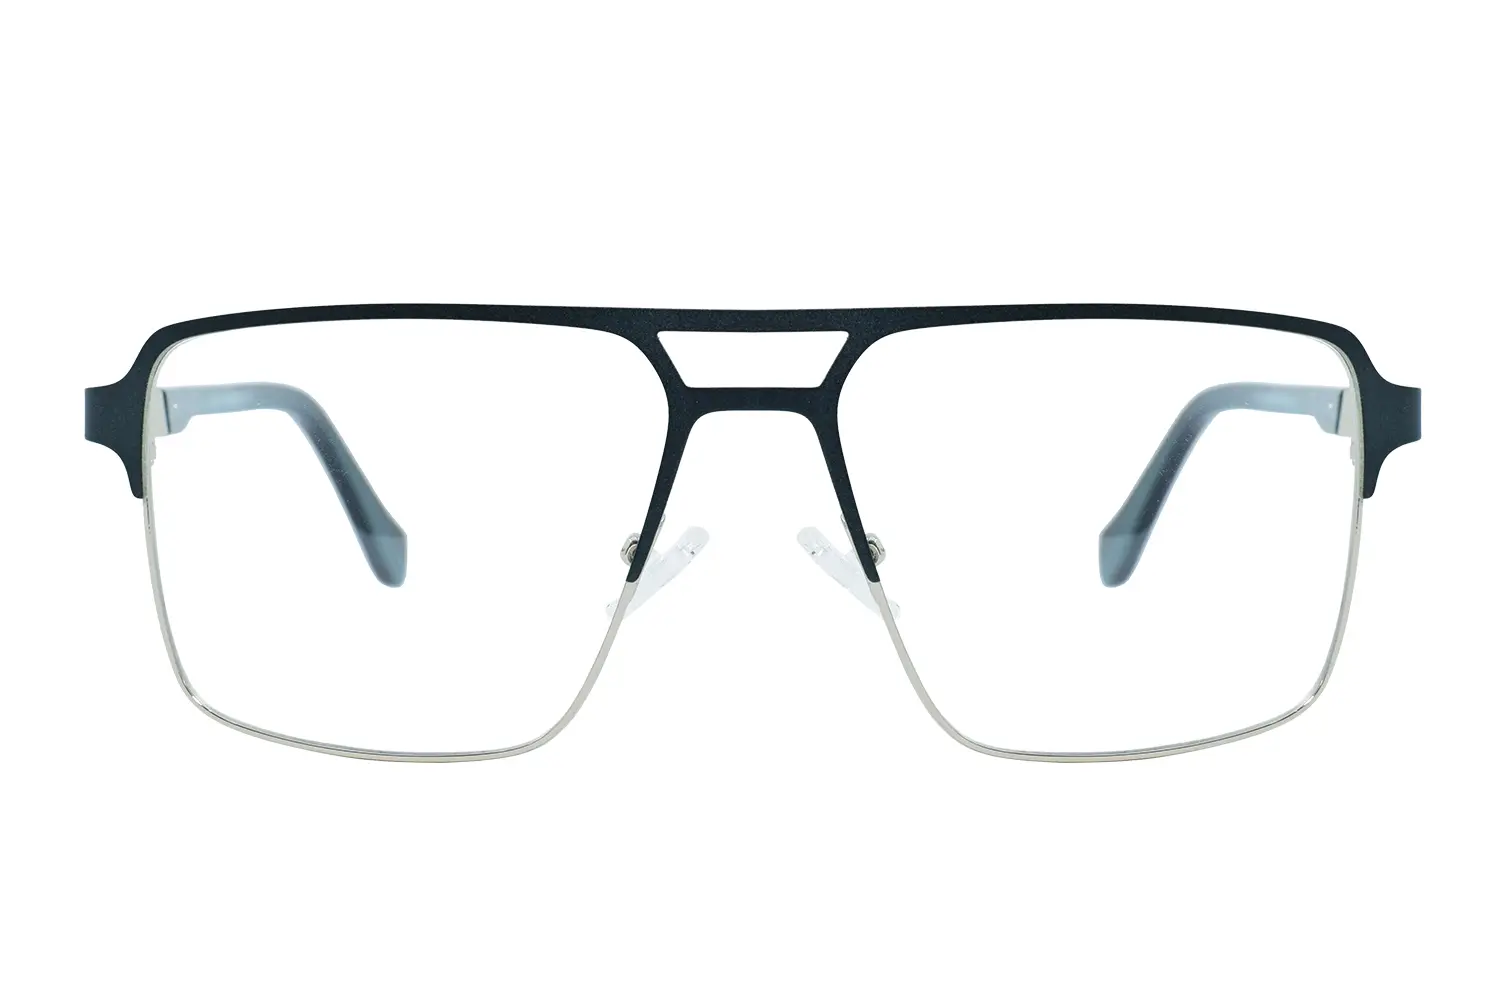 عینک طبی hugo boss مدل xc61138 c4 - دکترعینک